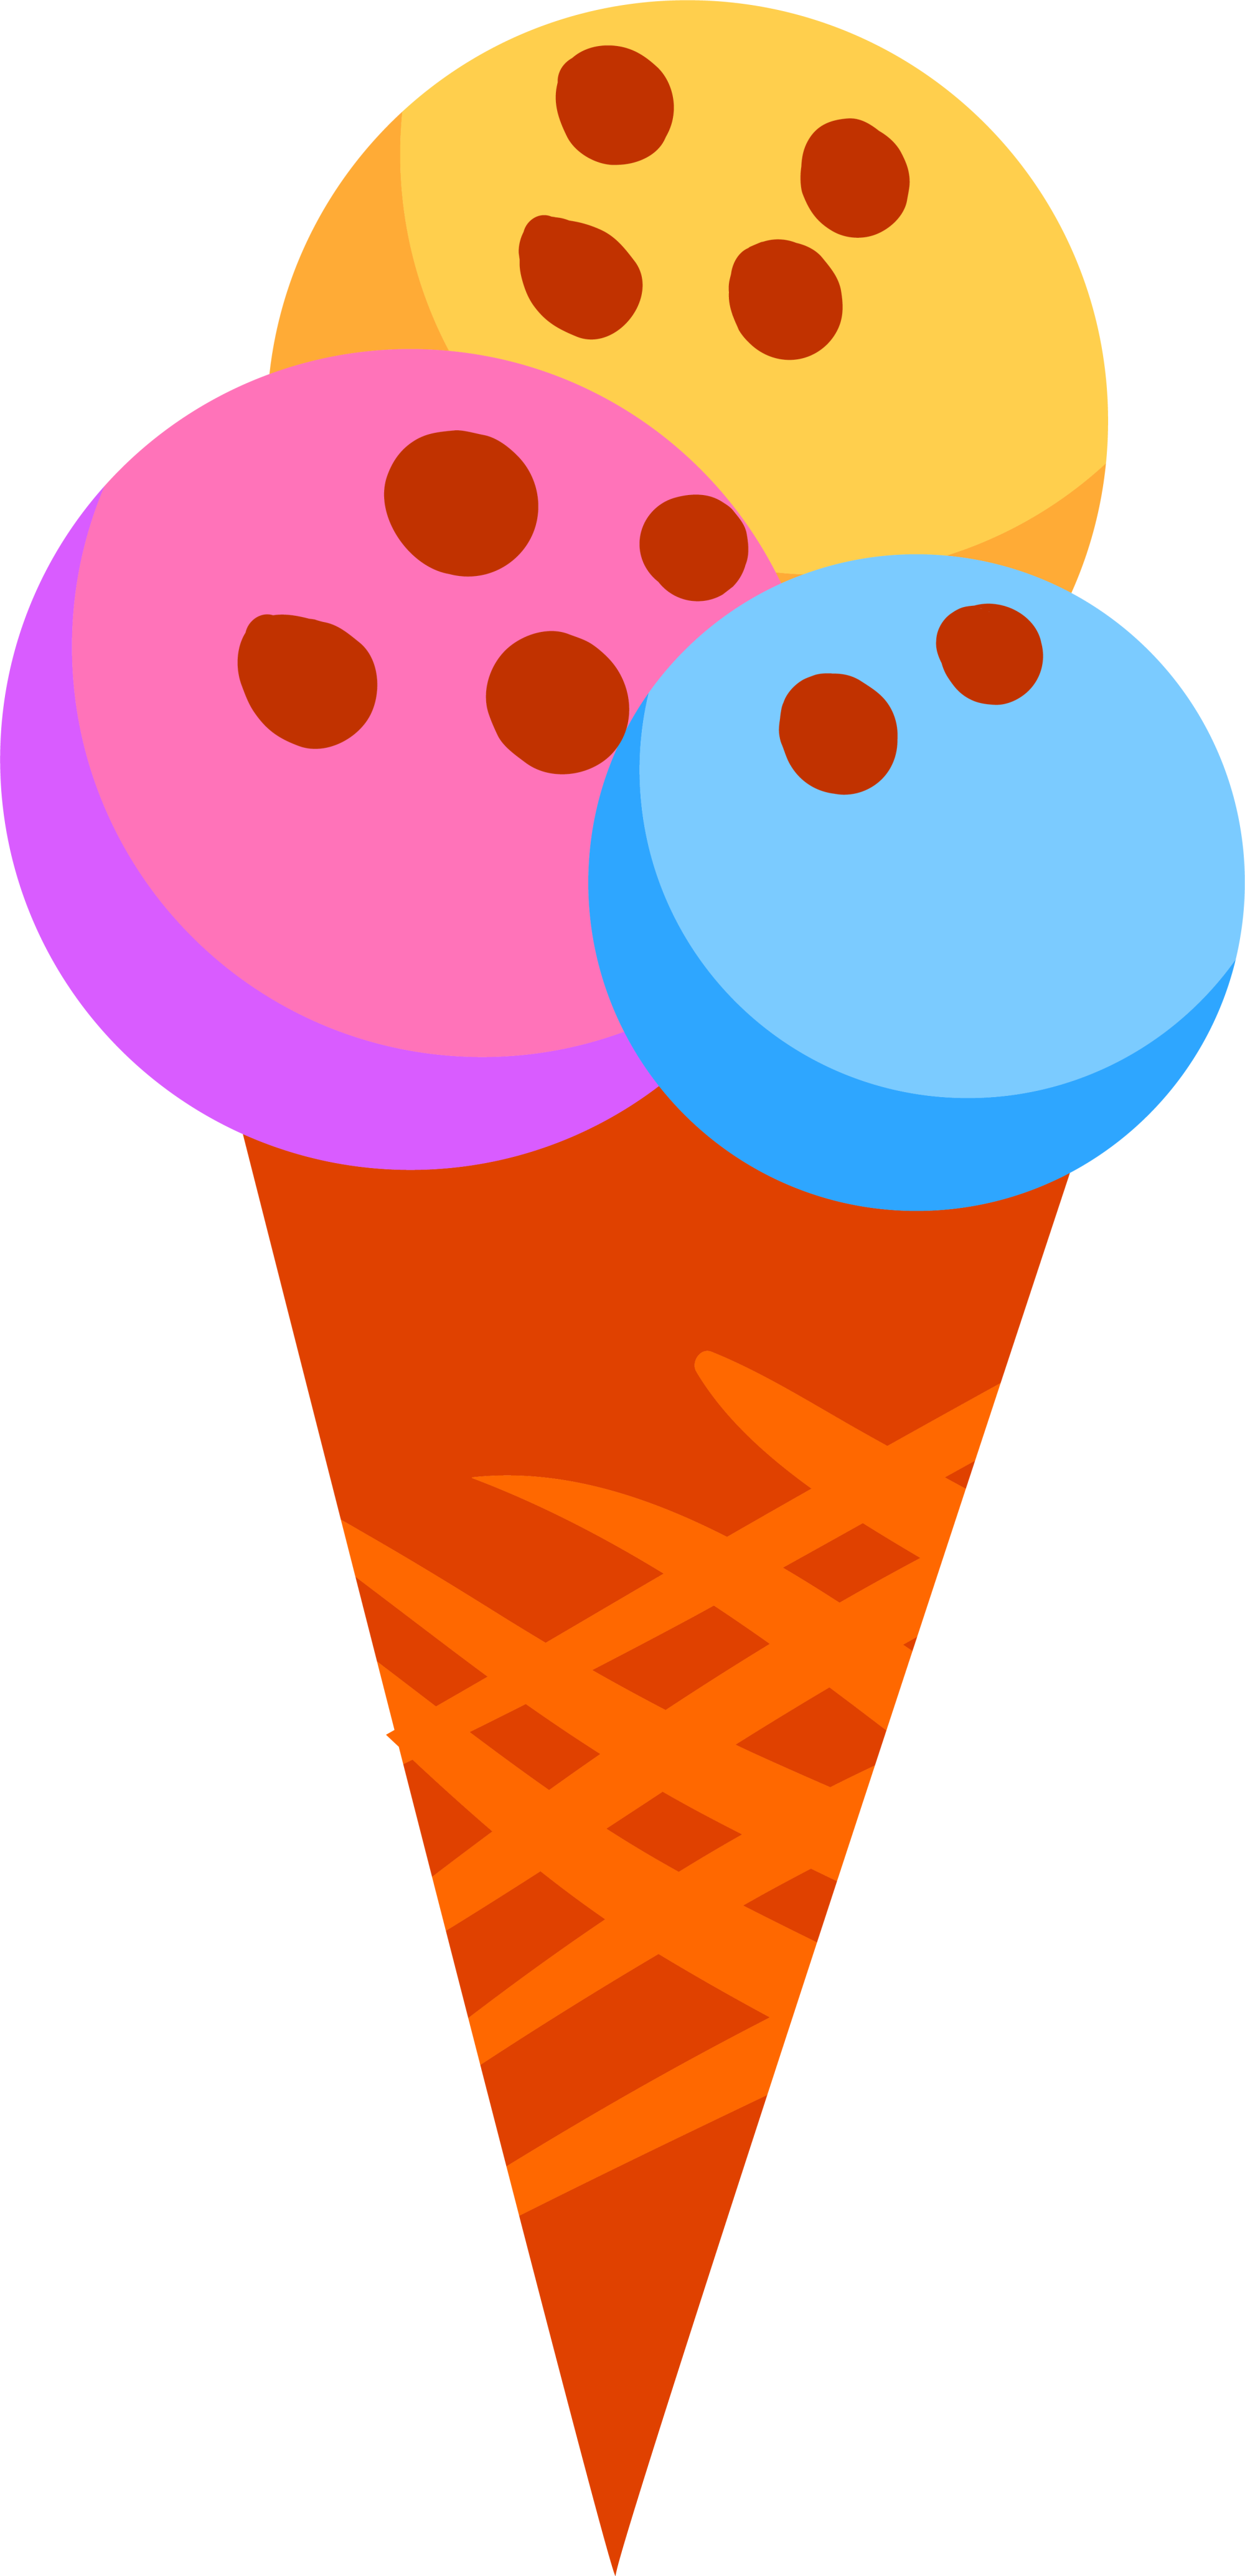 Icecream colorful